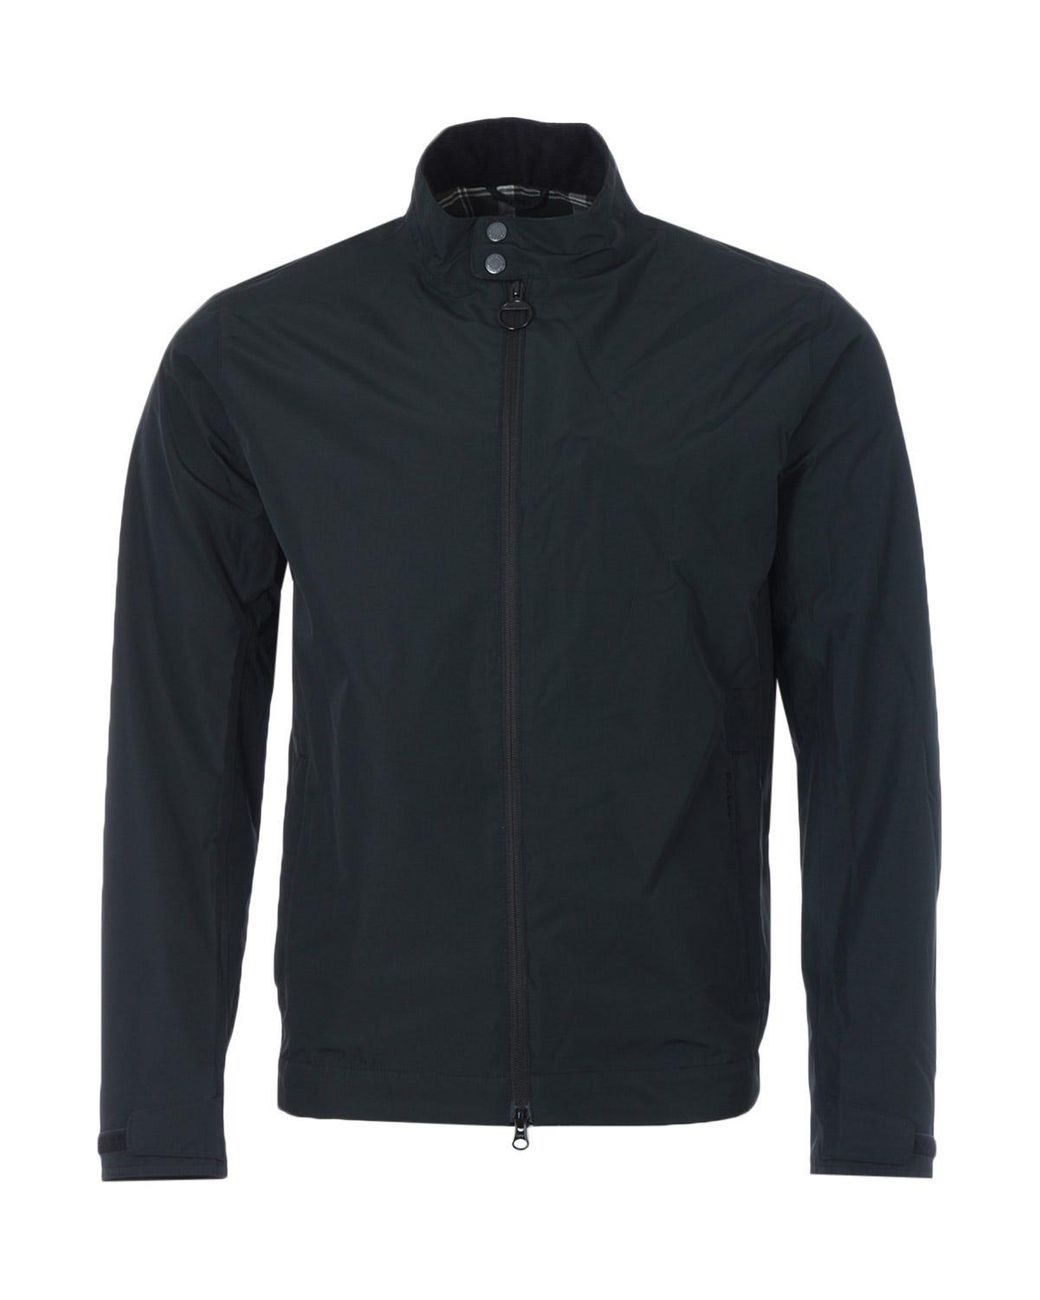 Barbour Cotton Golbin Waterproof Jacket in Black for Men - Lyst